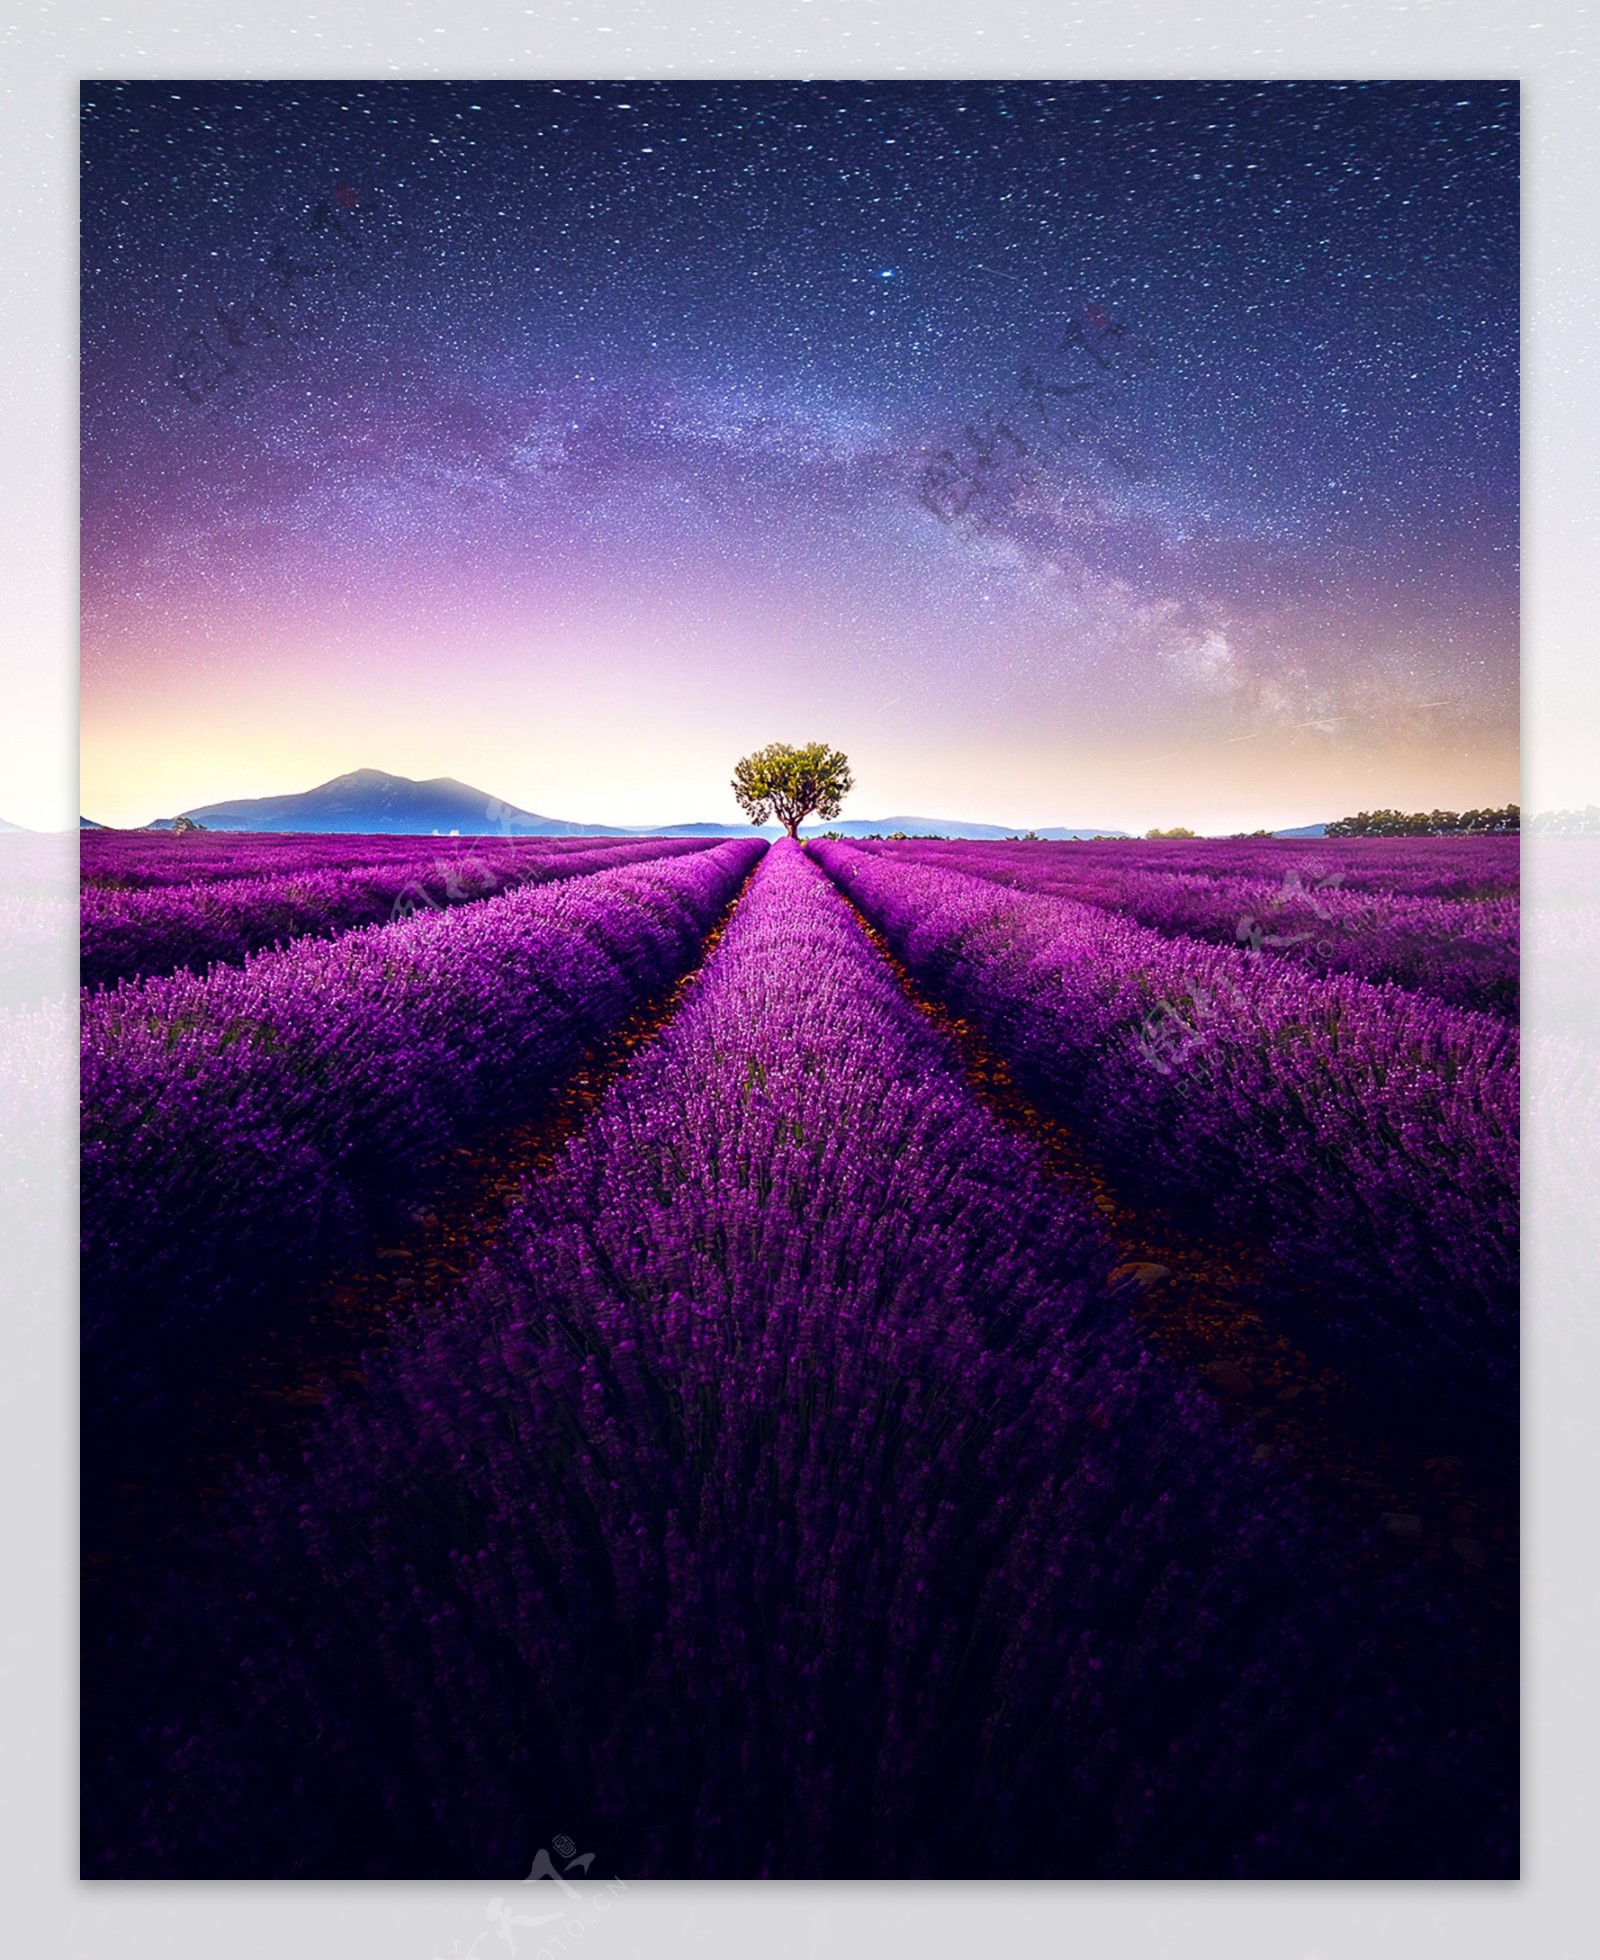 紫色花田